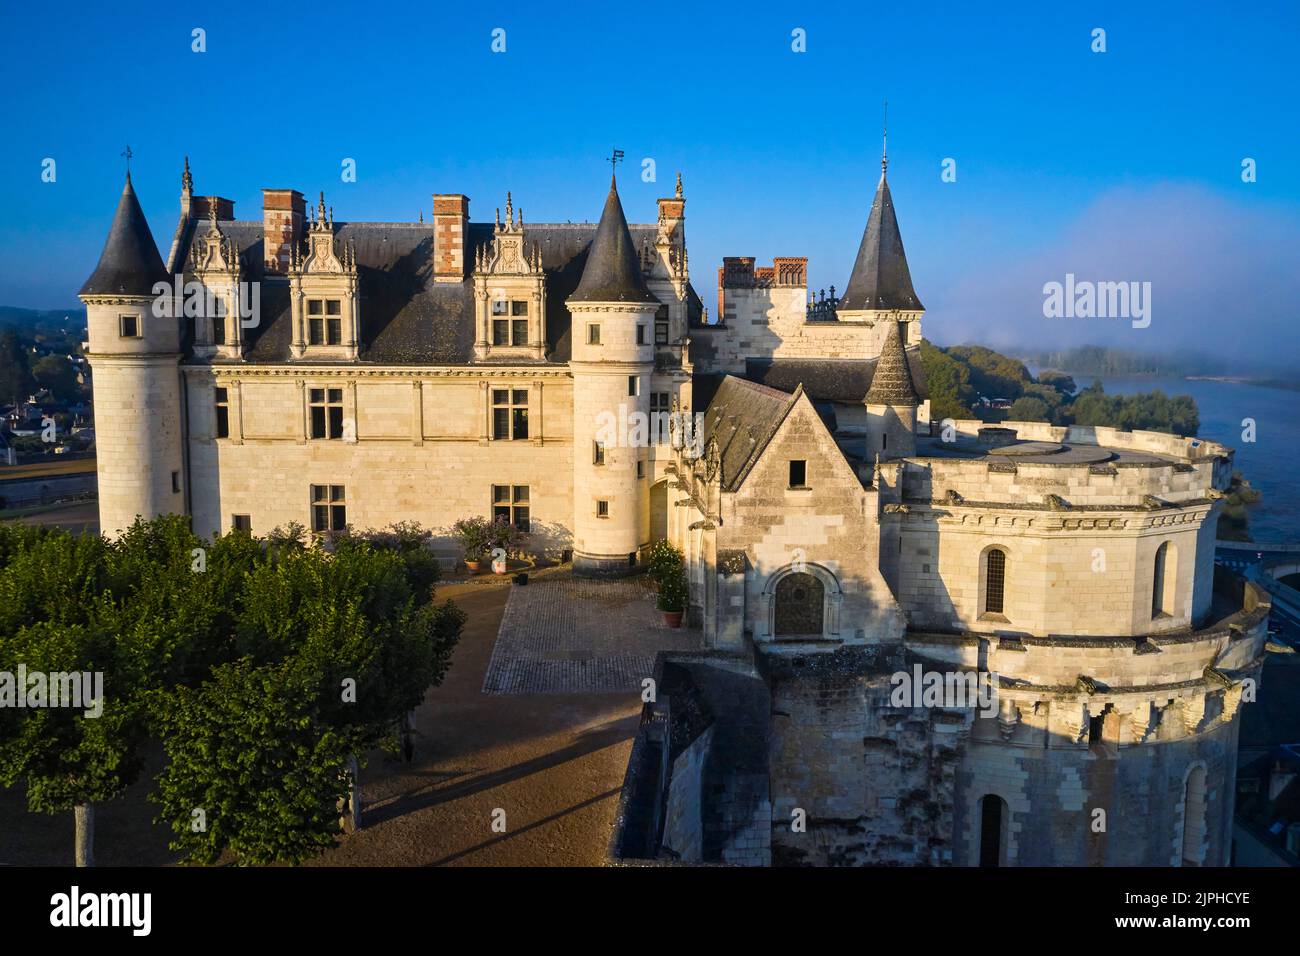 France, Indre-et-Loire (37), Amboise, Vallée de la Loire classée au patrimoine mondial de l'UNESCO, Châteaux de la Loire, château royal d'Amboise Banque D'Images